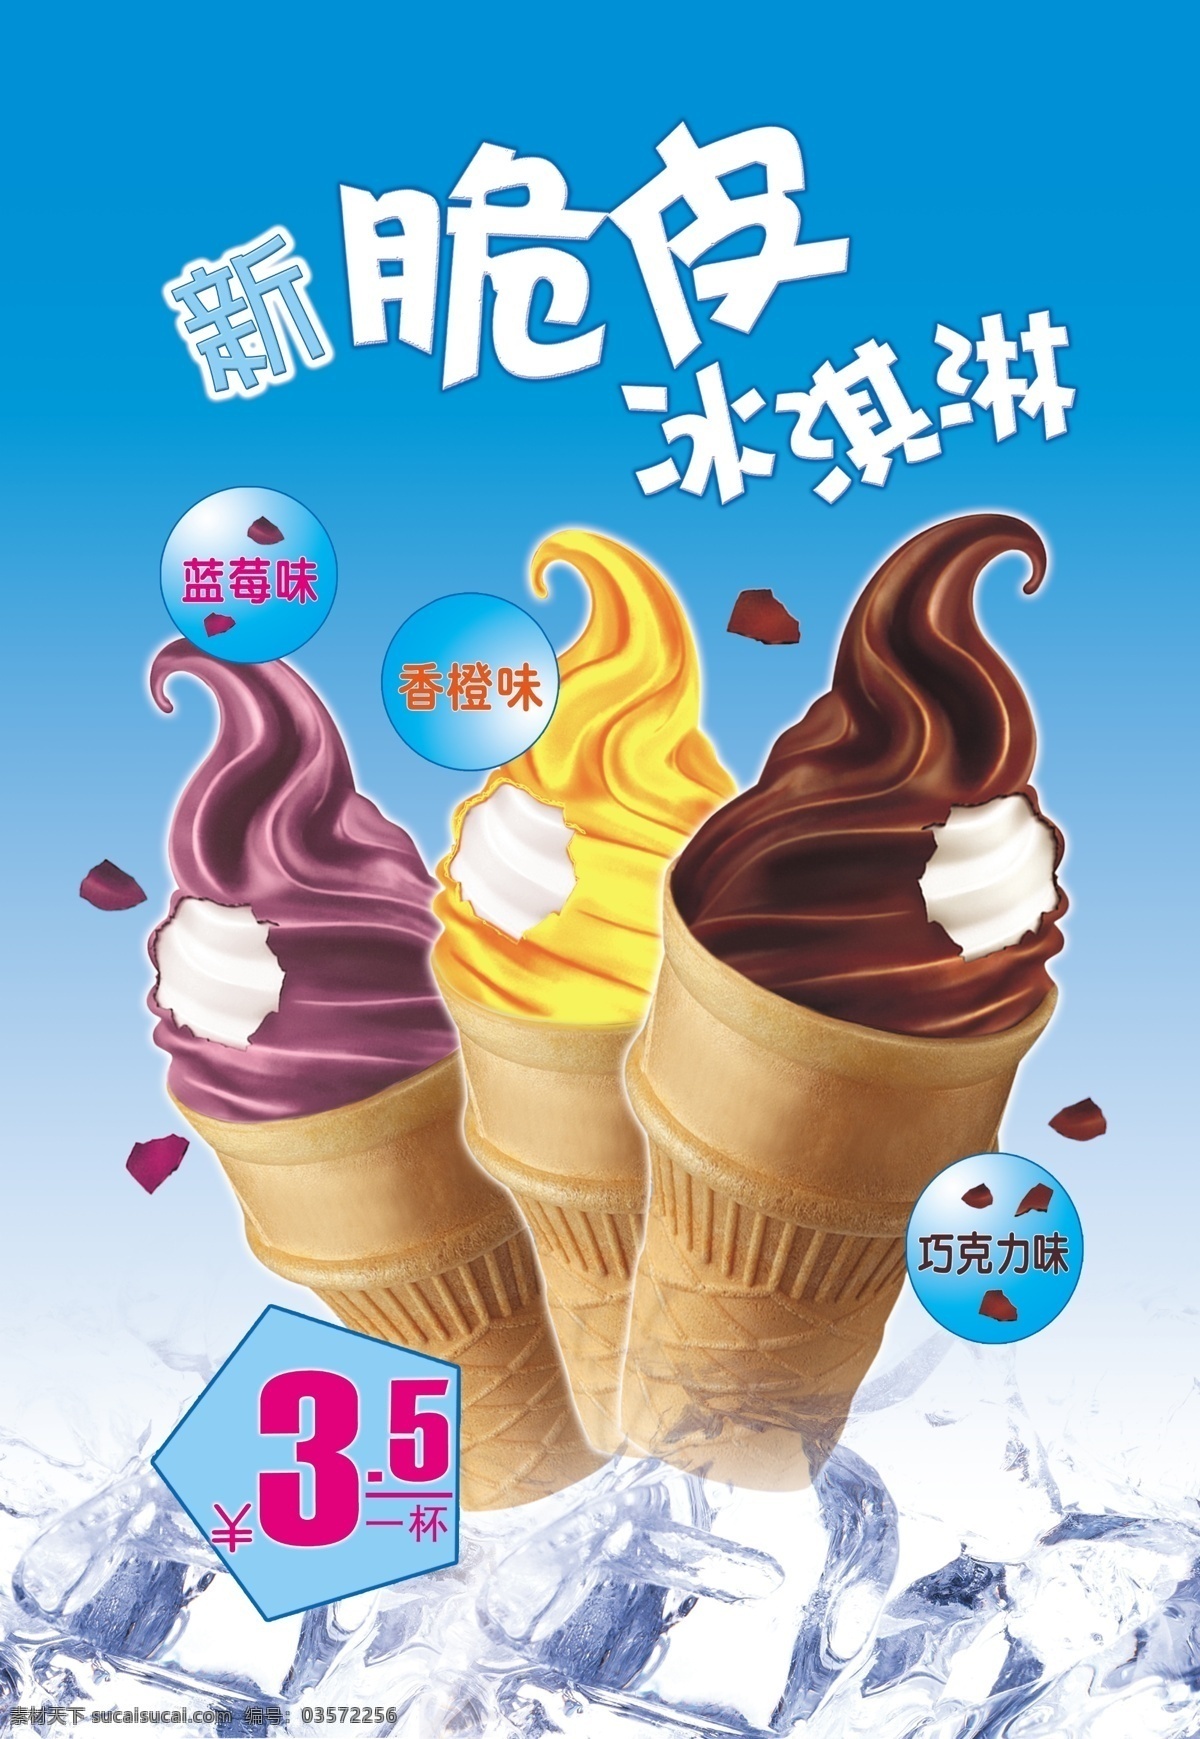 脆皮 冰淇淋 冰块 脆皮冰淇淋 蓝莓味 香橙味 巧克力味 原创设计 原创海报